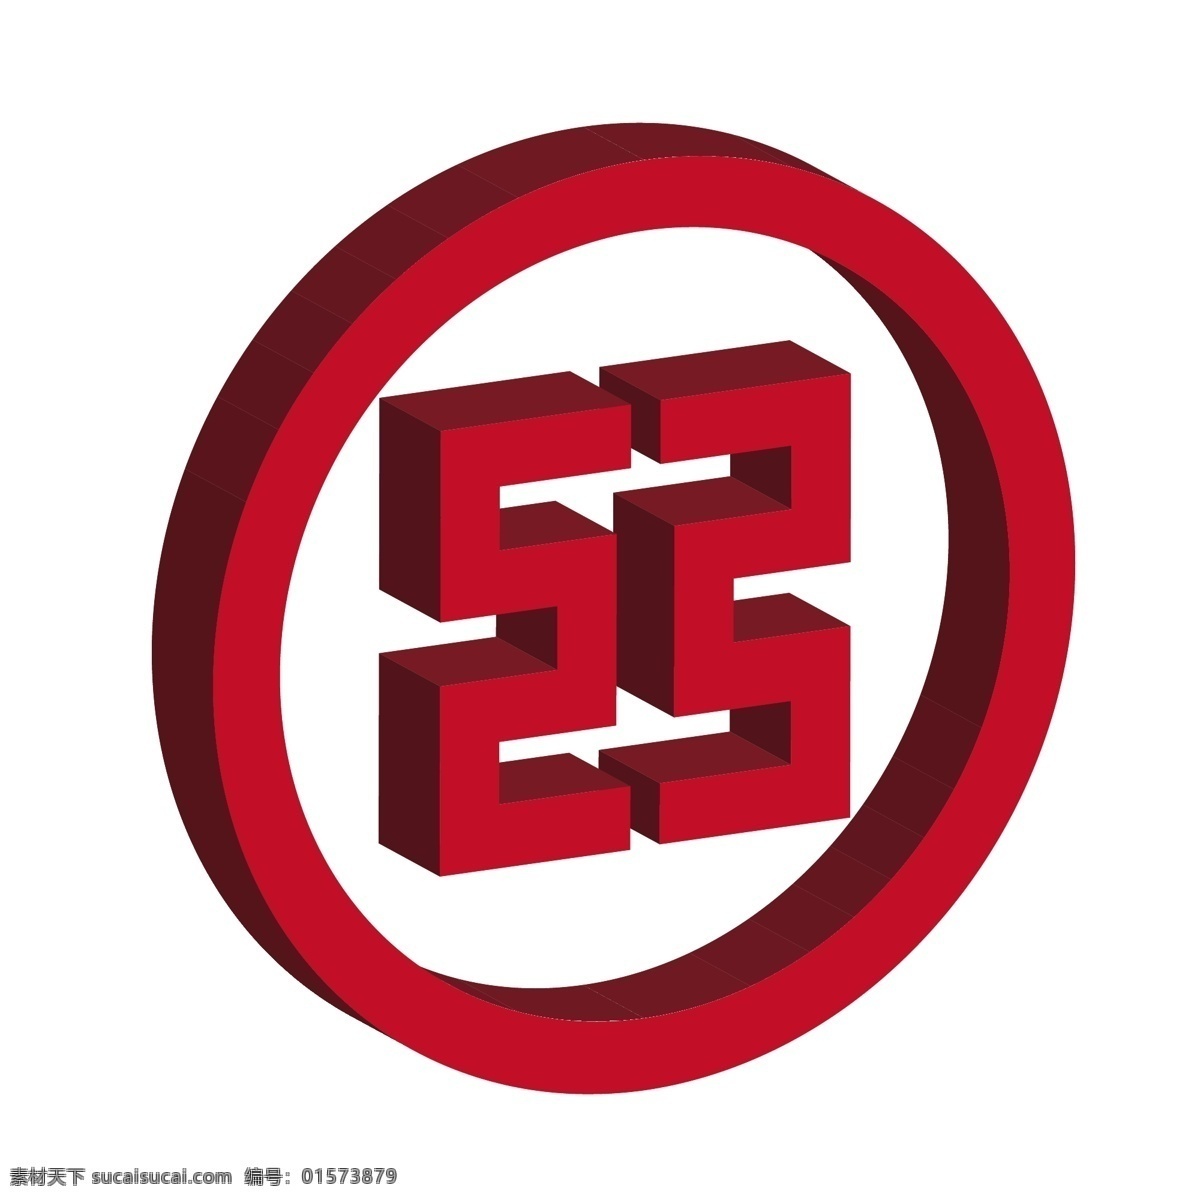 中国工商银行 矢量 logo 图标 手绘 金融图标 卡通 立体 商务 机构 创意 理财 红色 中国银行 logo图标